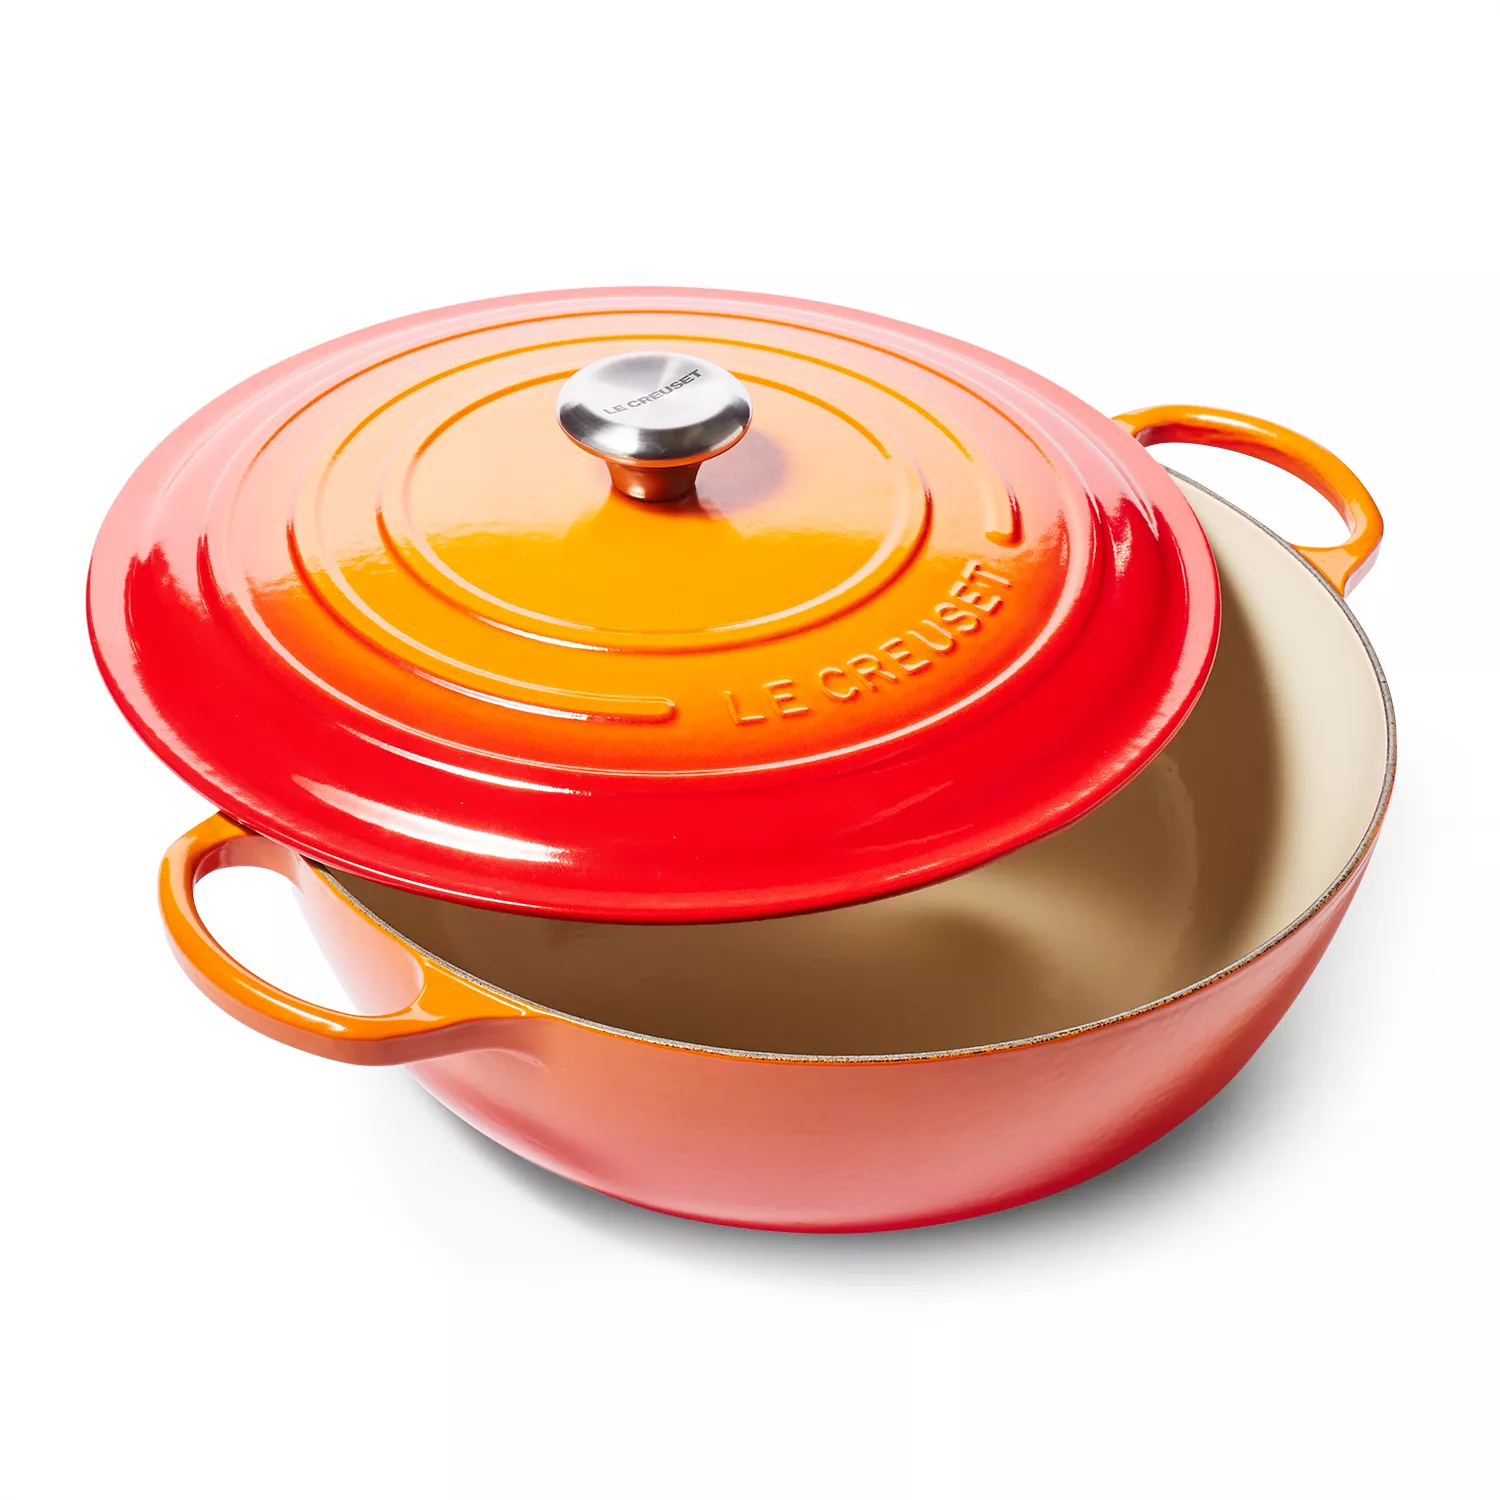 Le Creuset 5.25 Qt Cast Iron Roasting Pan - Flame Orange